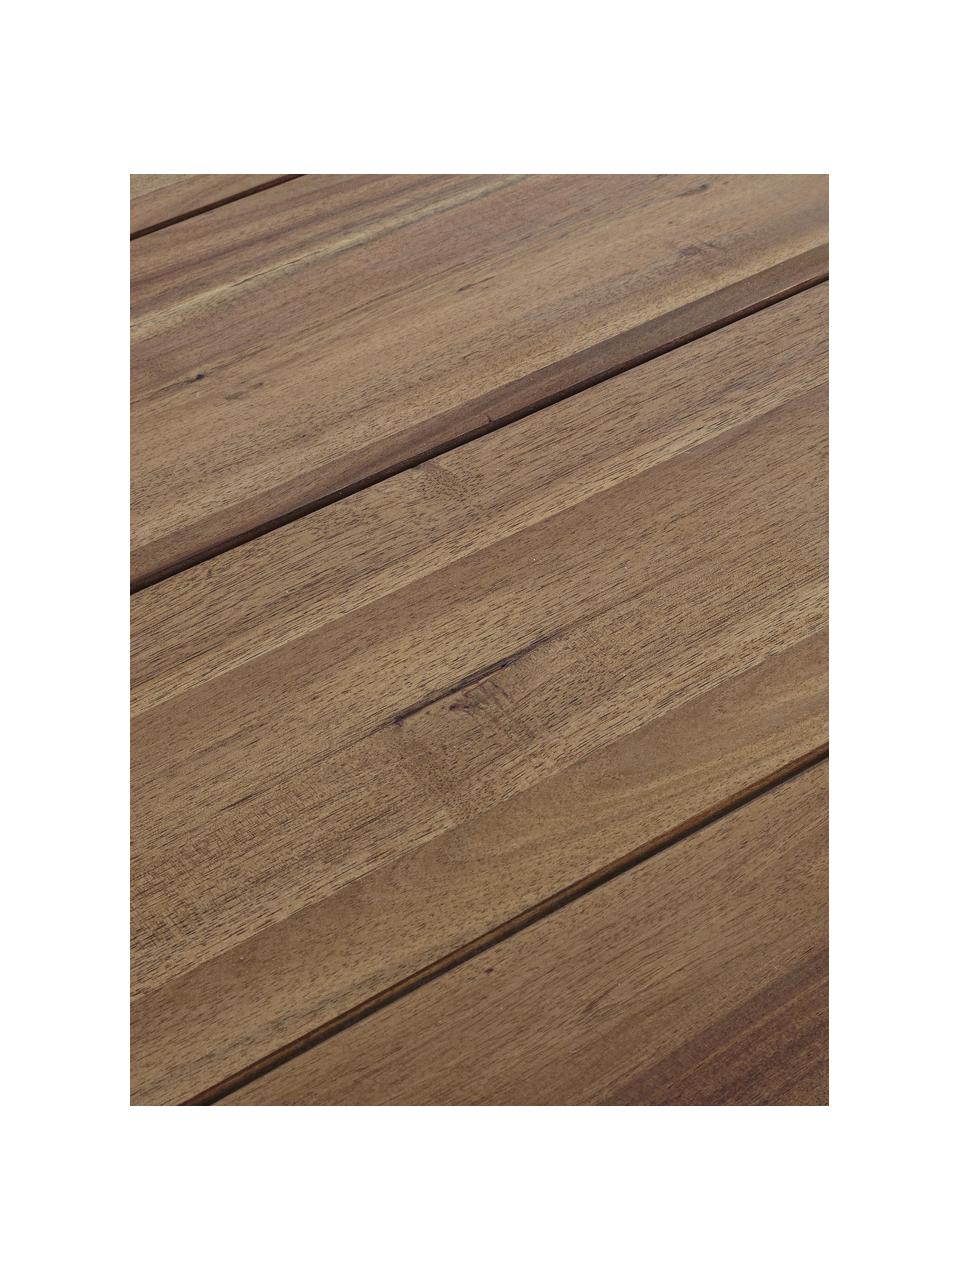 Gartentisch Glasgow aus Akazienholz, 180 x 90 cm, Akazienholz, FSC-zertifiziert, Akazienholz, B 180 x T 90 cm